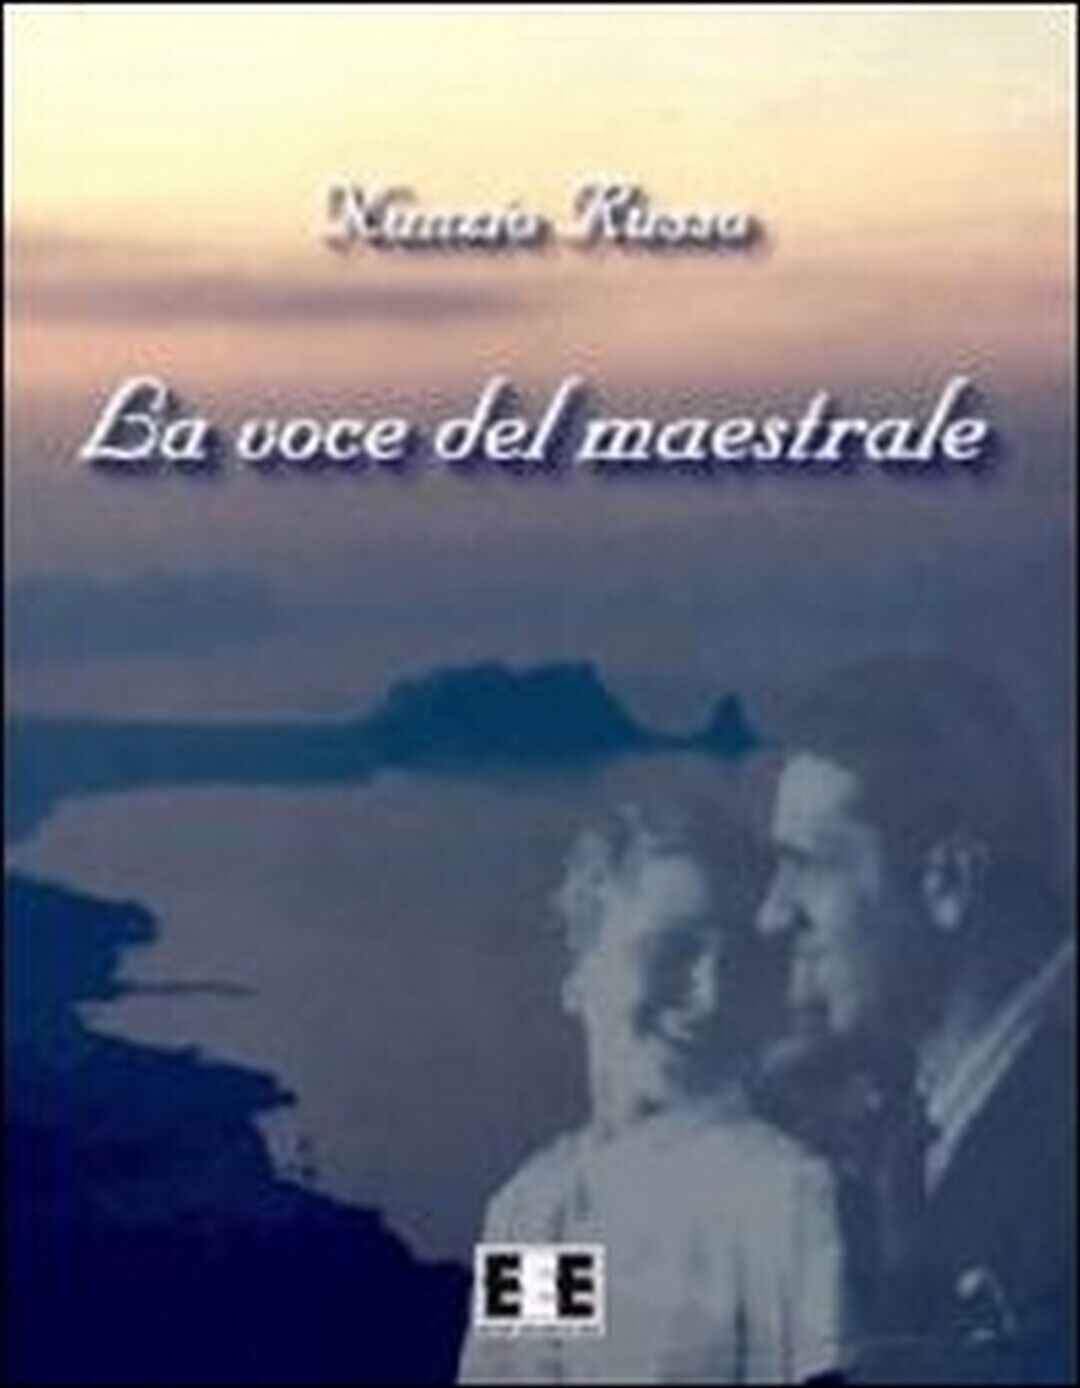 La voce del maestrale  di Nunzio Russo,  2013,  Eee-edizioni Esordienti